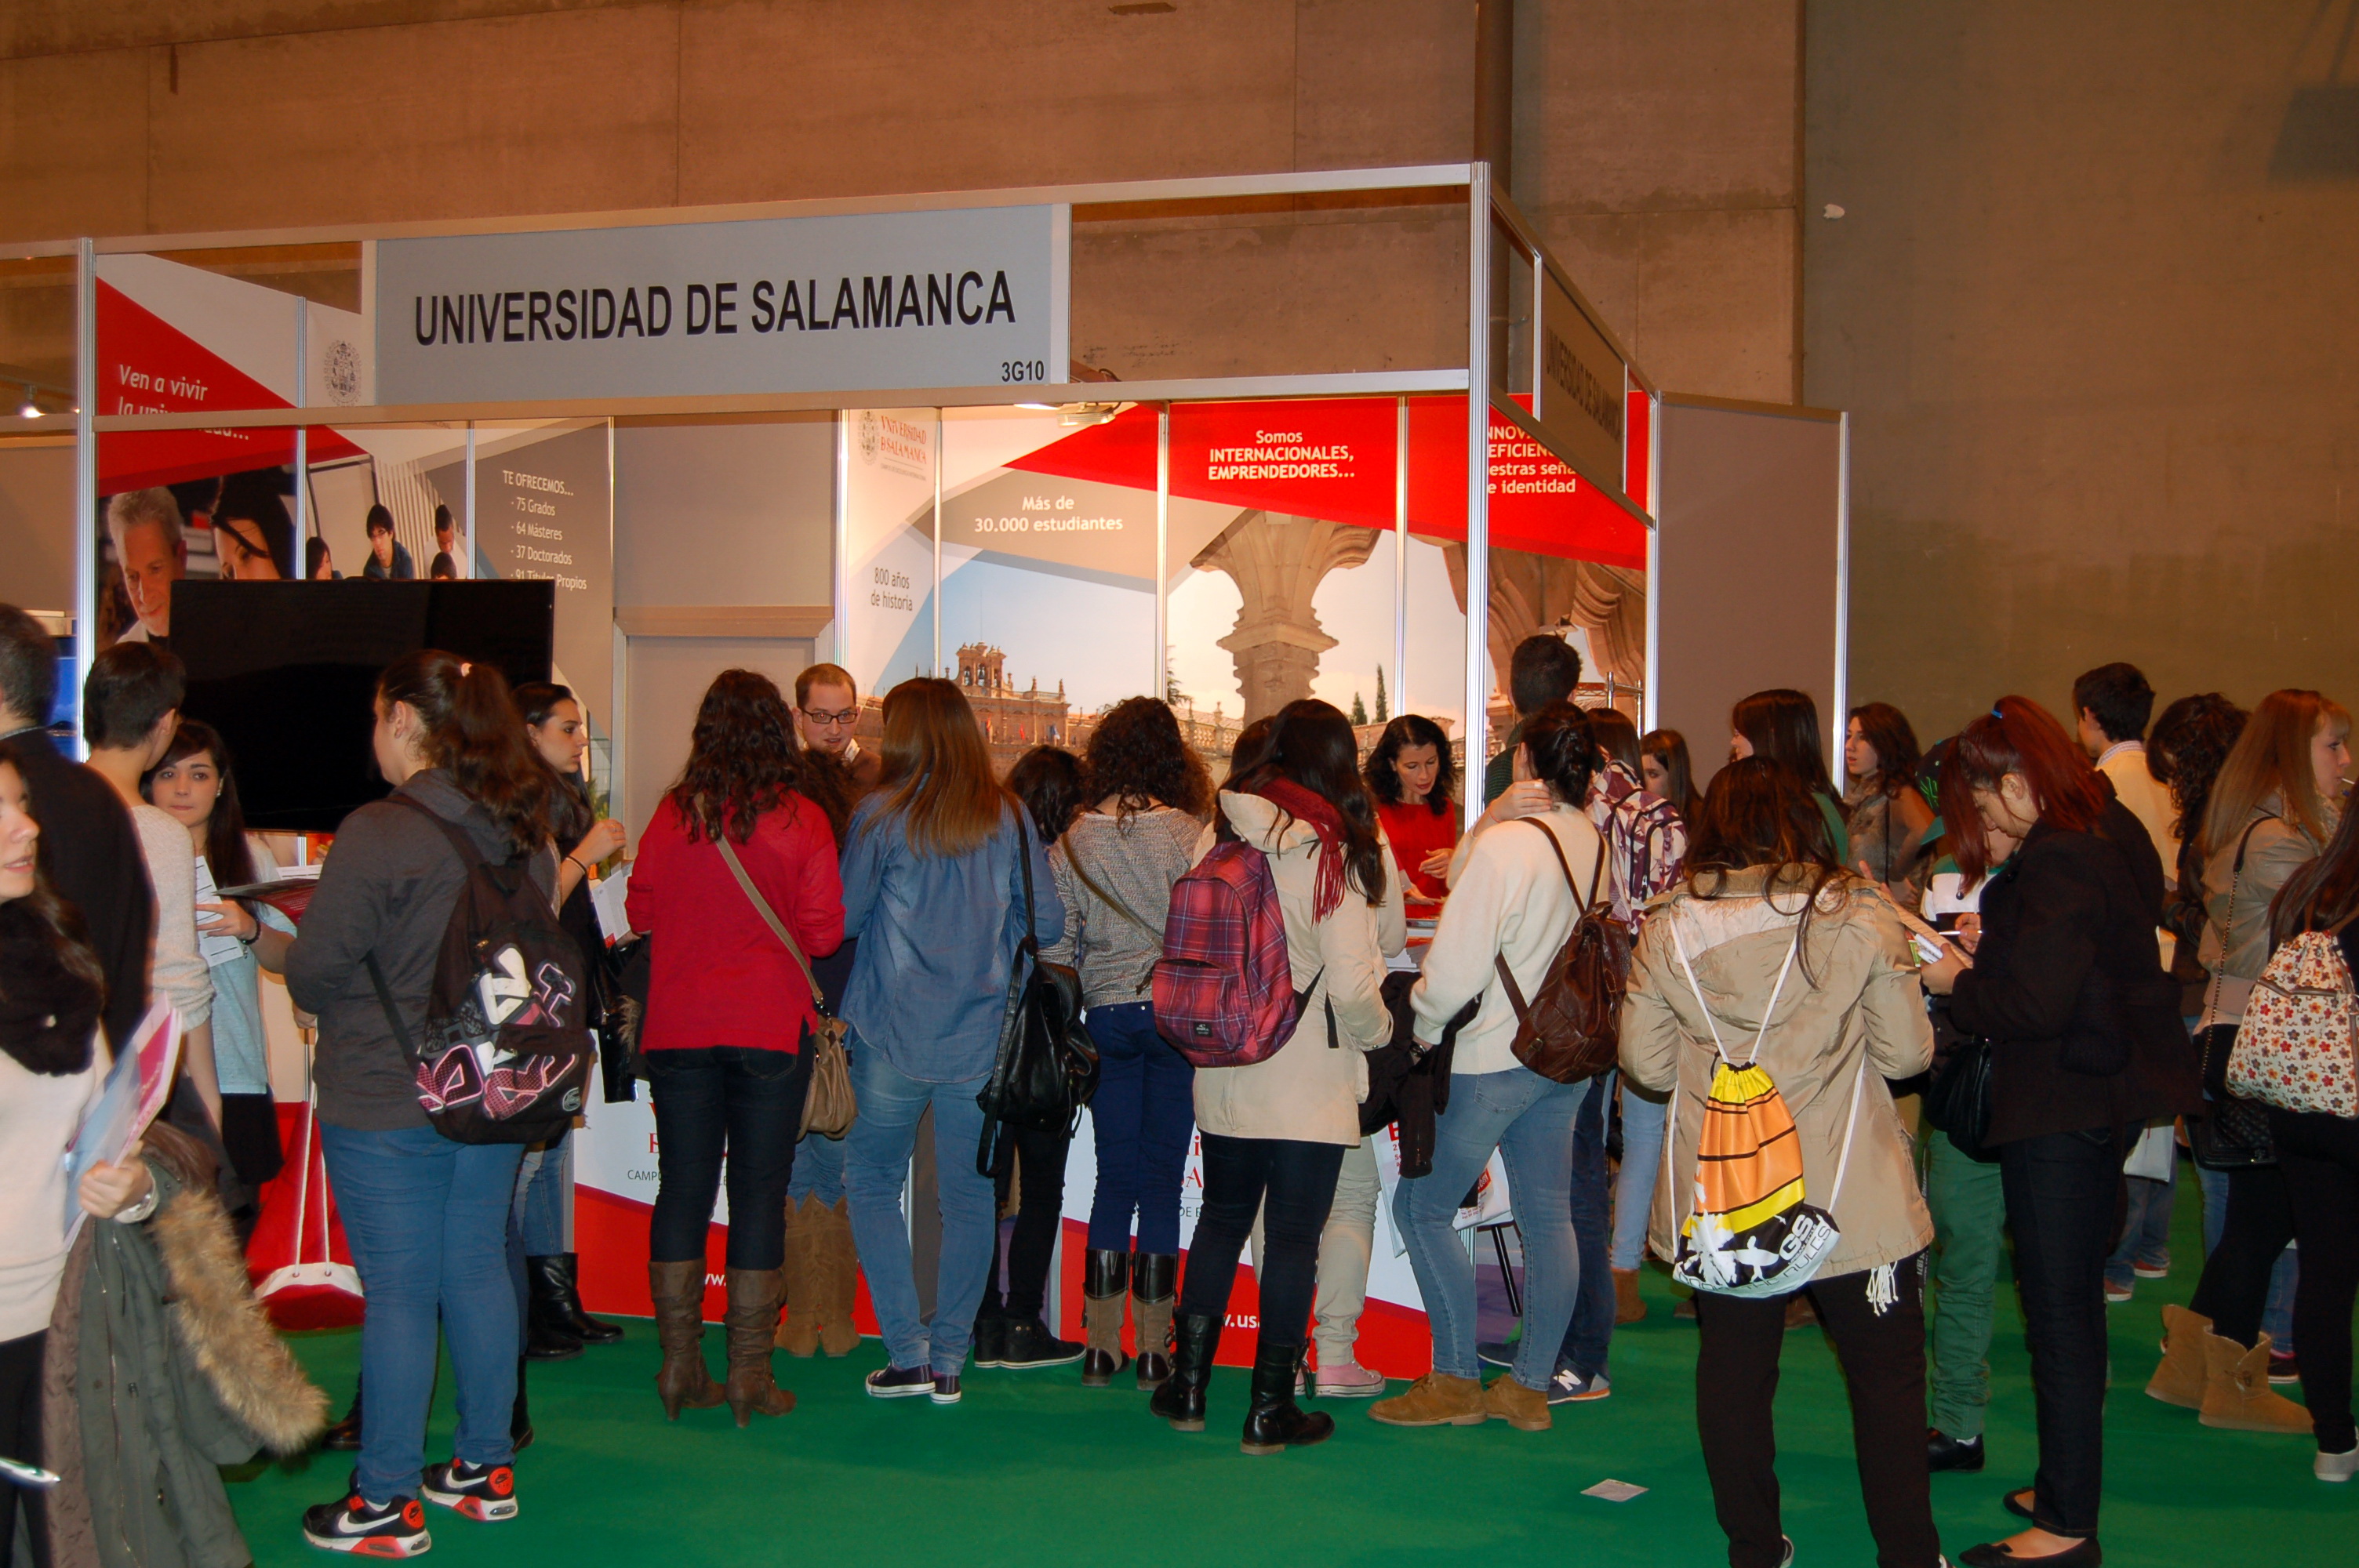 El estand de la Universidad de Salamanca en AULA 2014 recibe la visita de centenares de estudiantes interesados en conocer su oferta académica